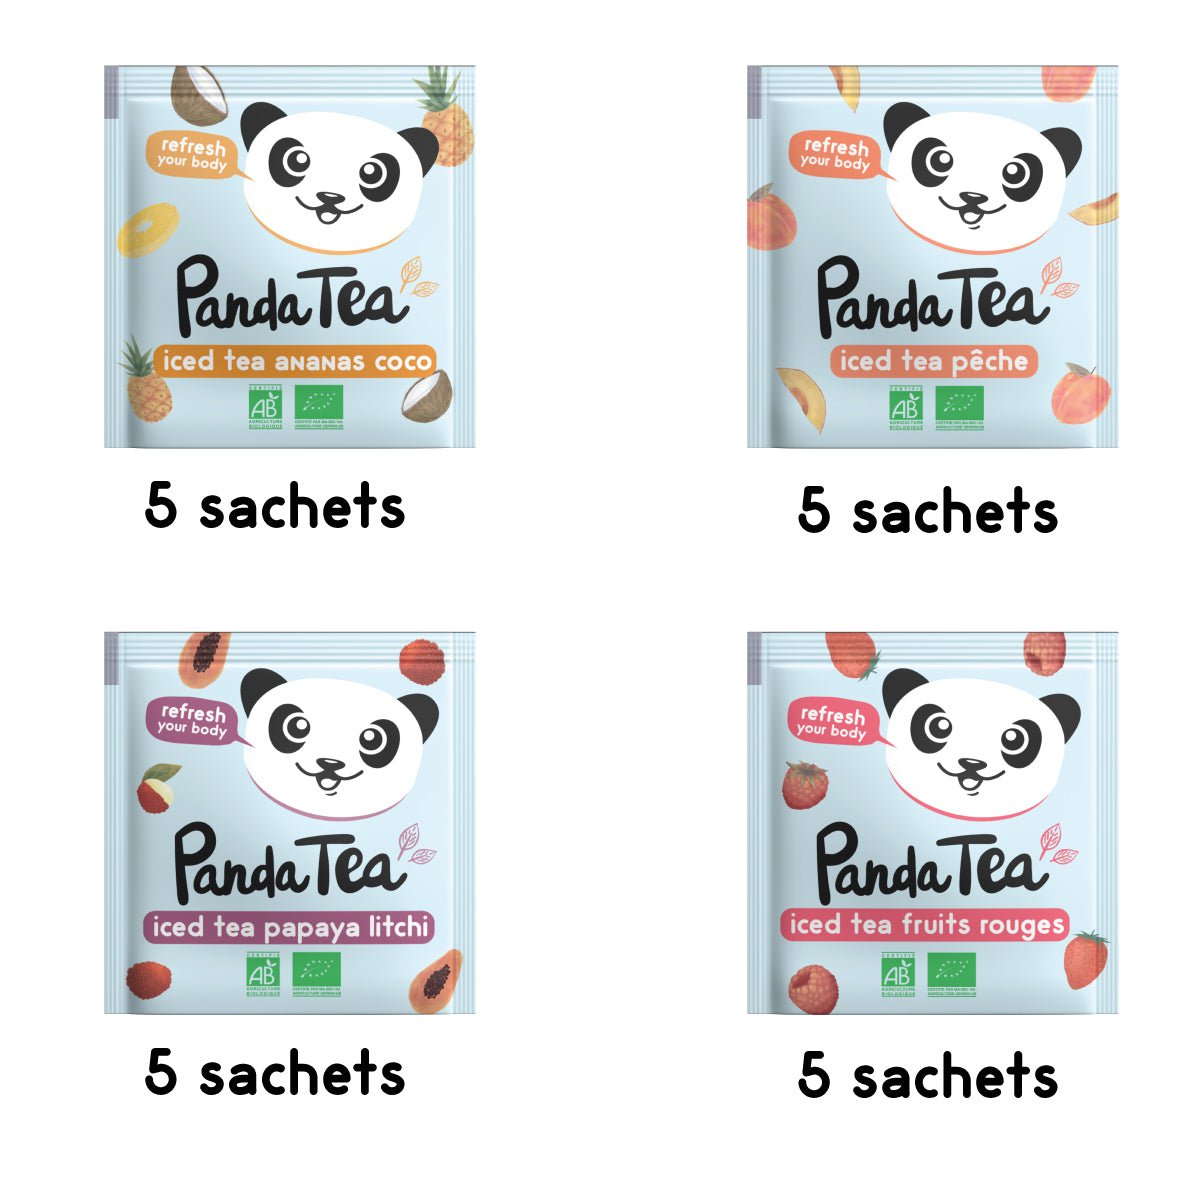 Panda tea coffret thés et infusions 45 sachets